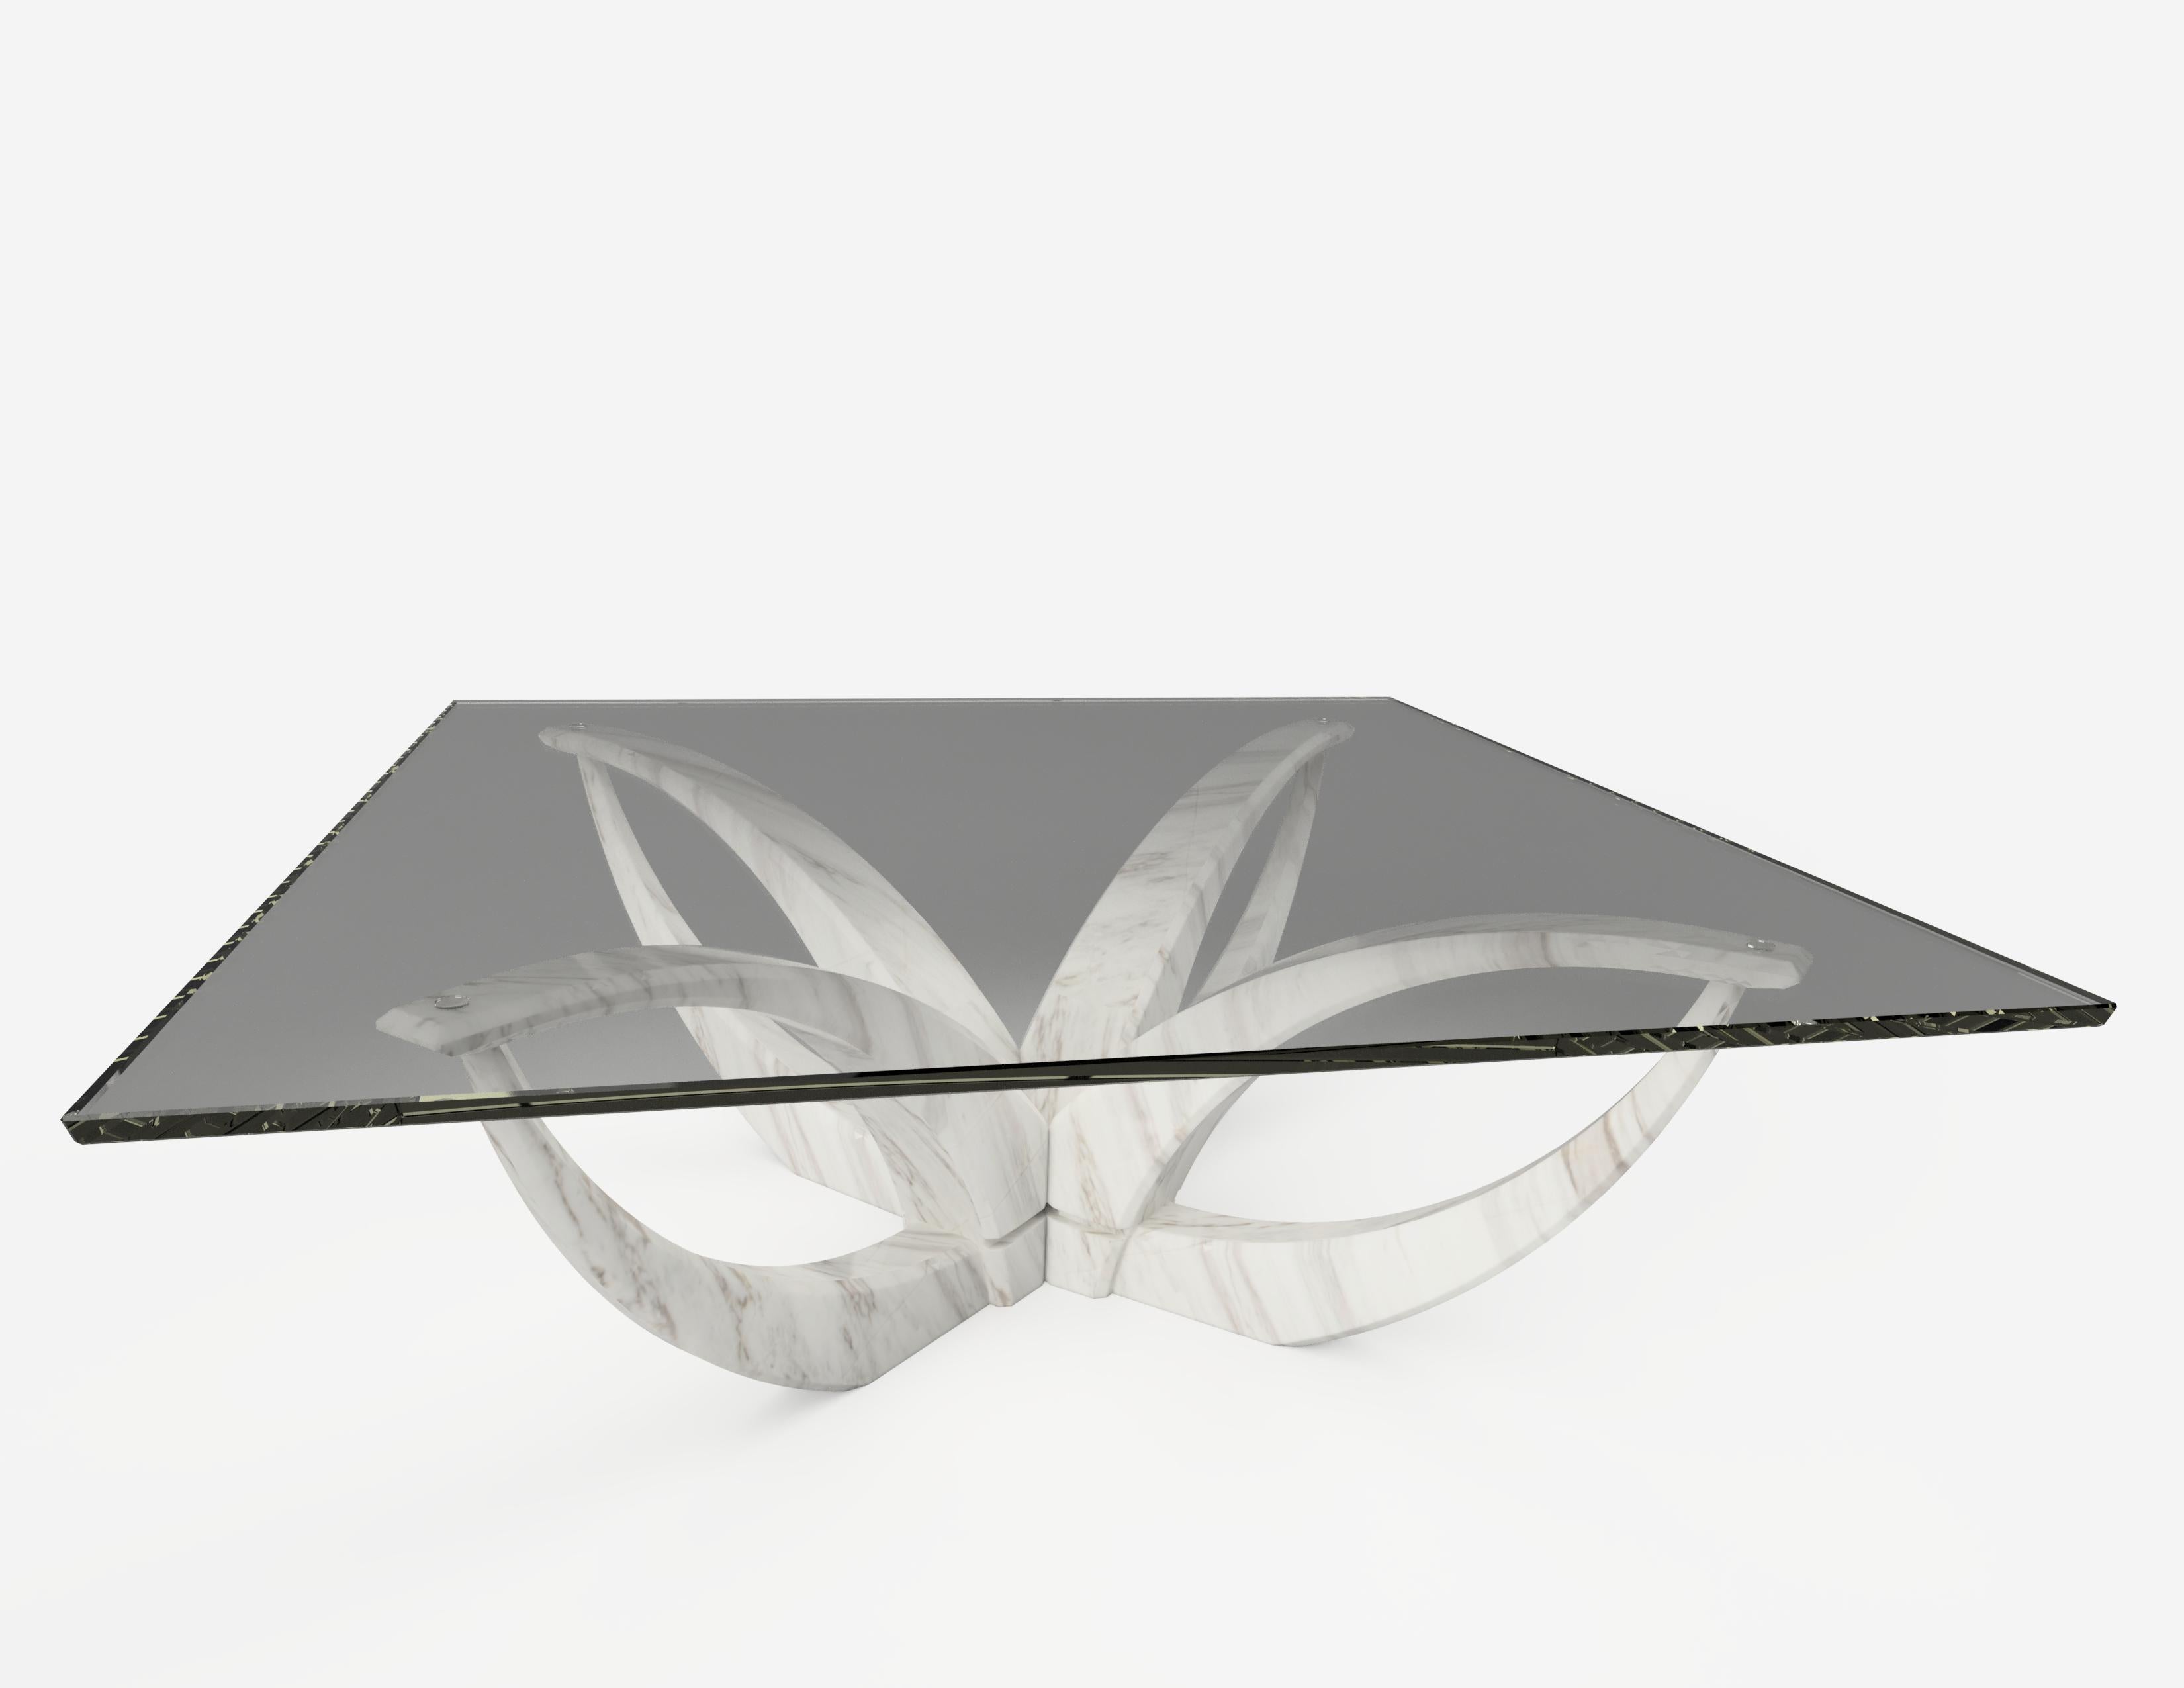 Le centre de table en forme de fleur de lune en diamant, 1 de 1 par Grzegorz Majka
Edition 1 de 1
Dimensions : 39.37 x 39.37 x 13.78 in
MATERIAL : plateau en verre fumé. Base en marbre onyx. 


La collection Diamond prouve que tout est